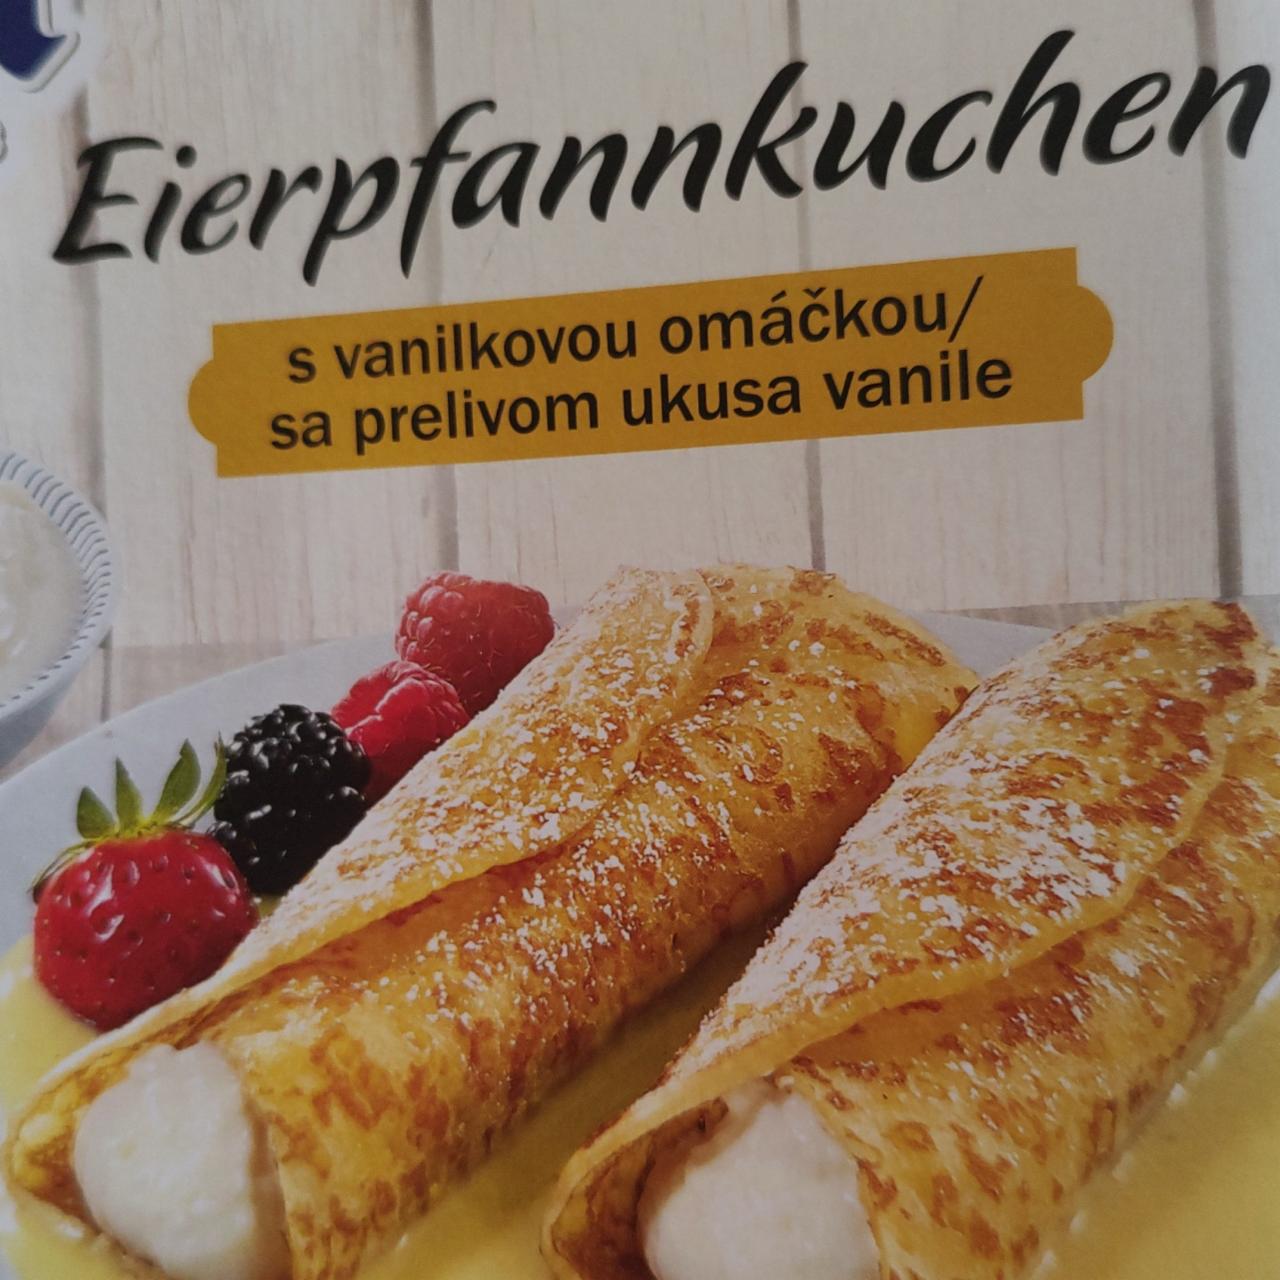 Fotografie - Eierpfannkuchen palačinky s vanilkovou omáčkou Alpen fest style